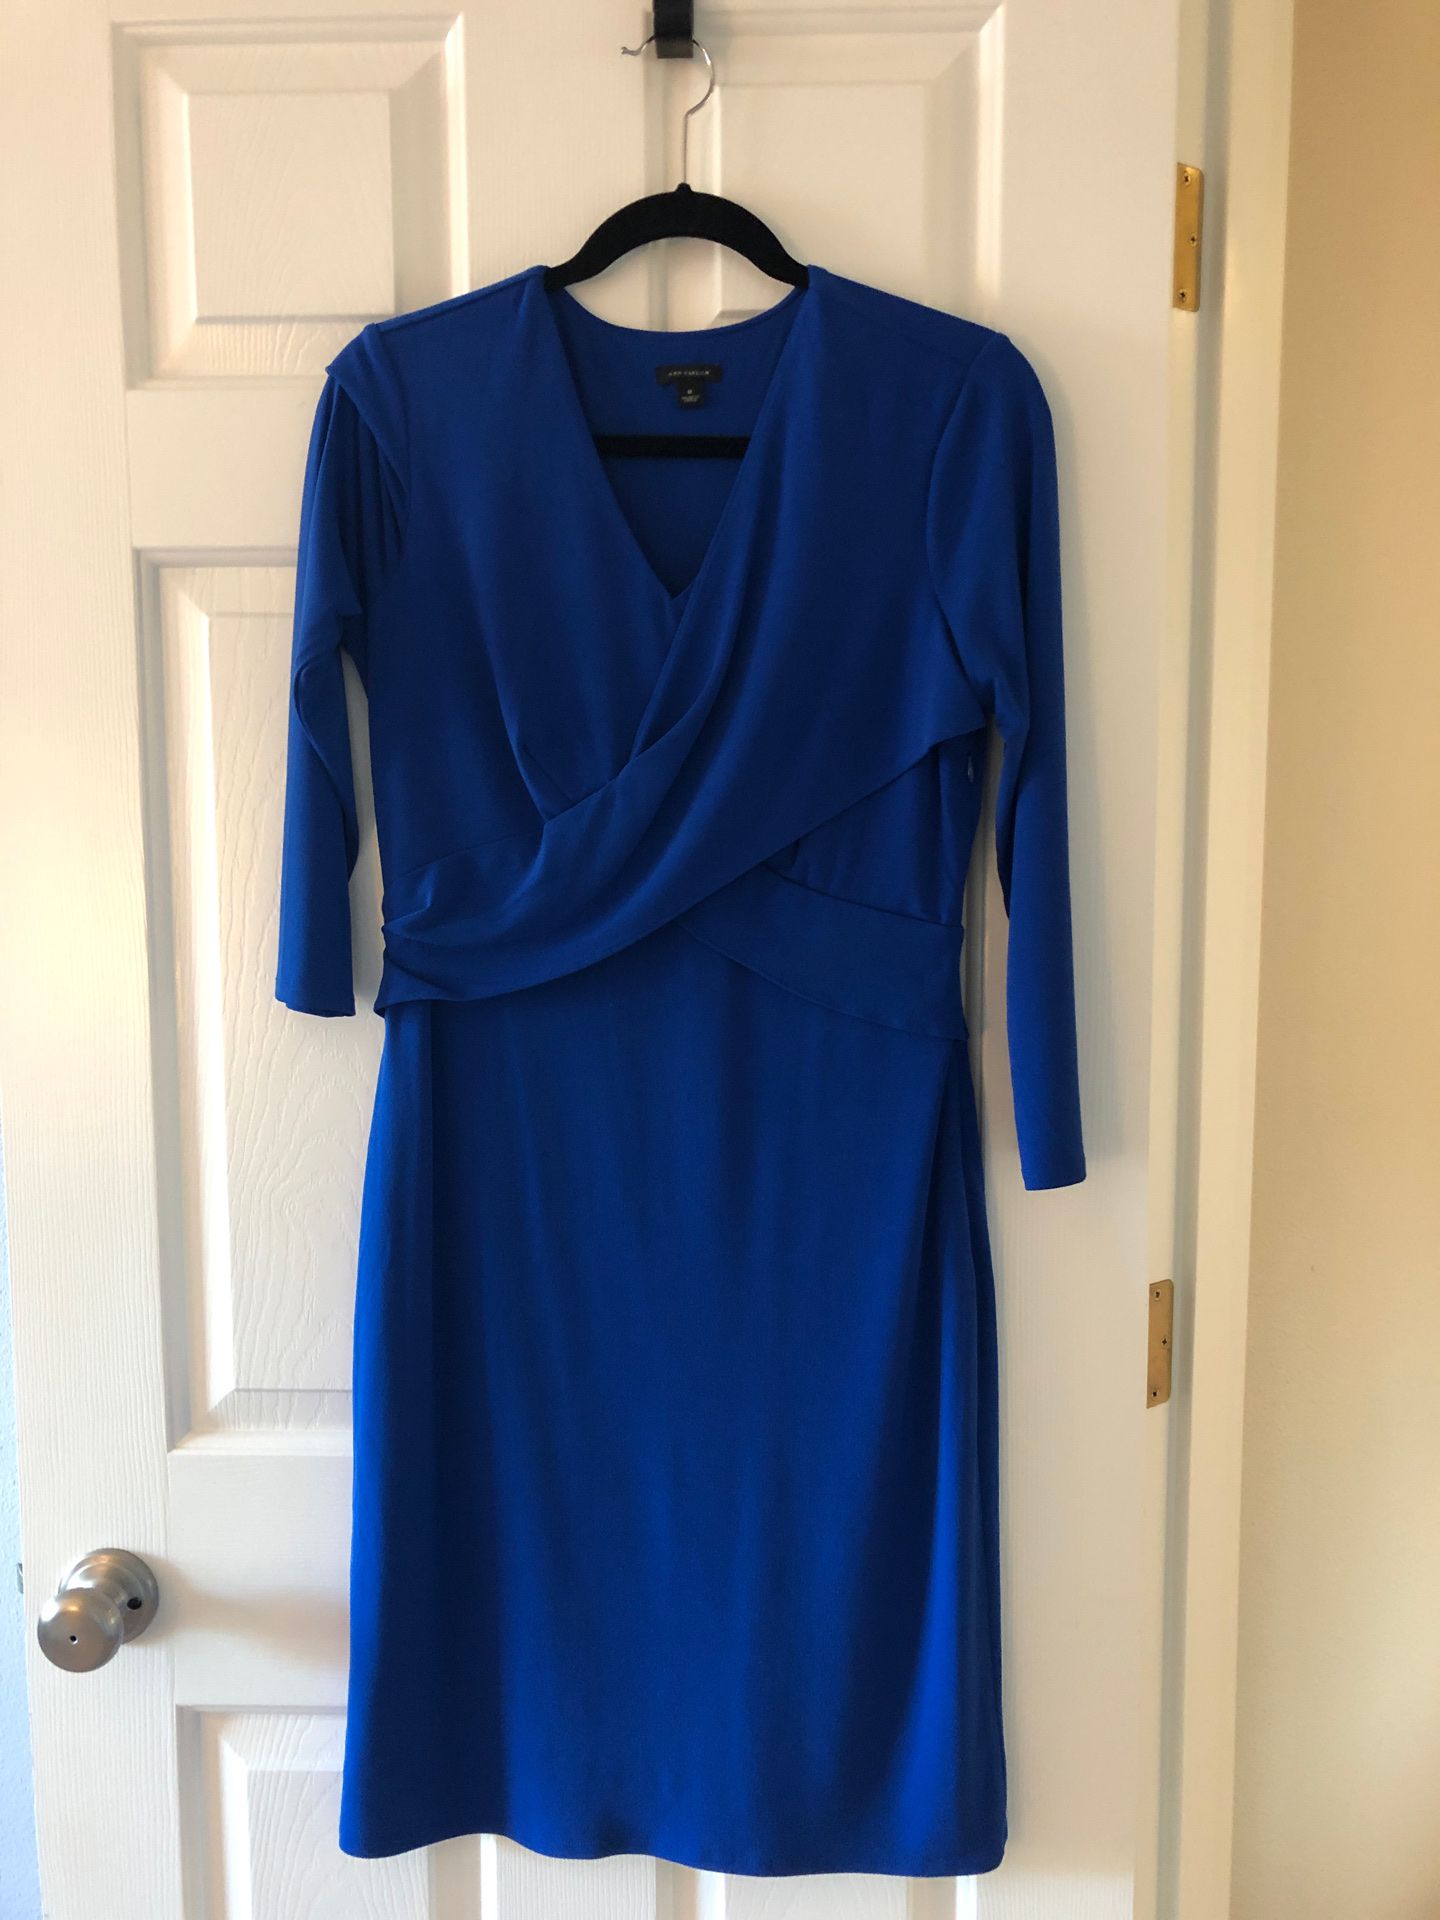 Ann Taylor Dress - Royal Blue - Size: 8